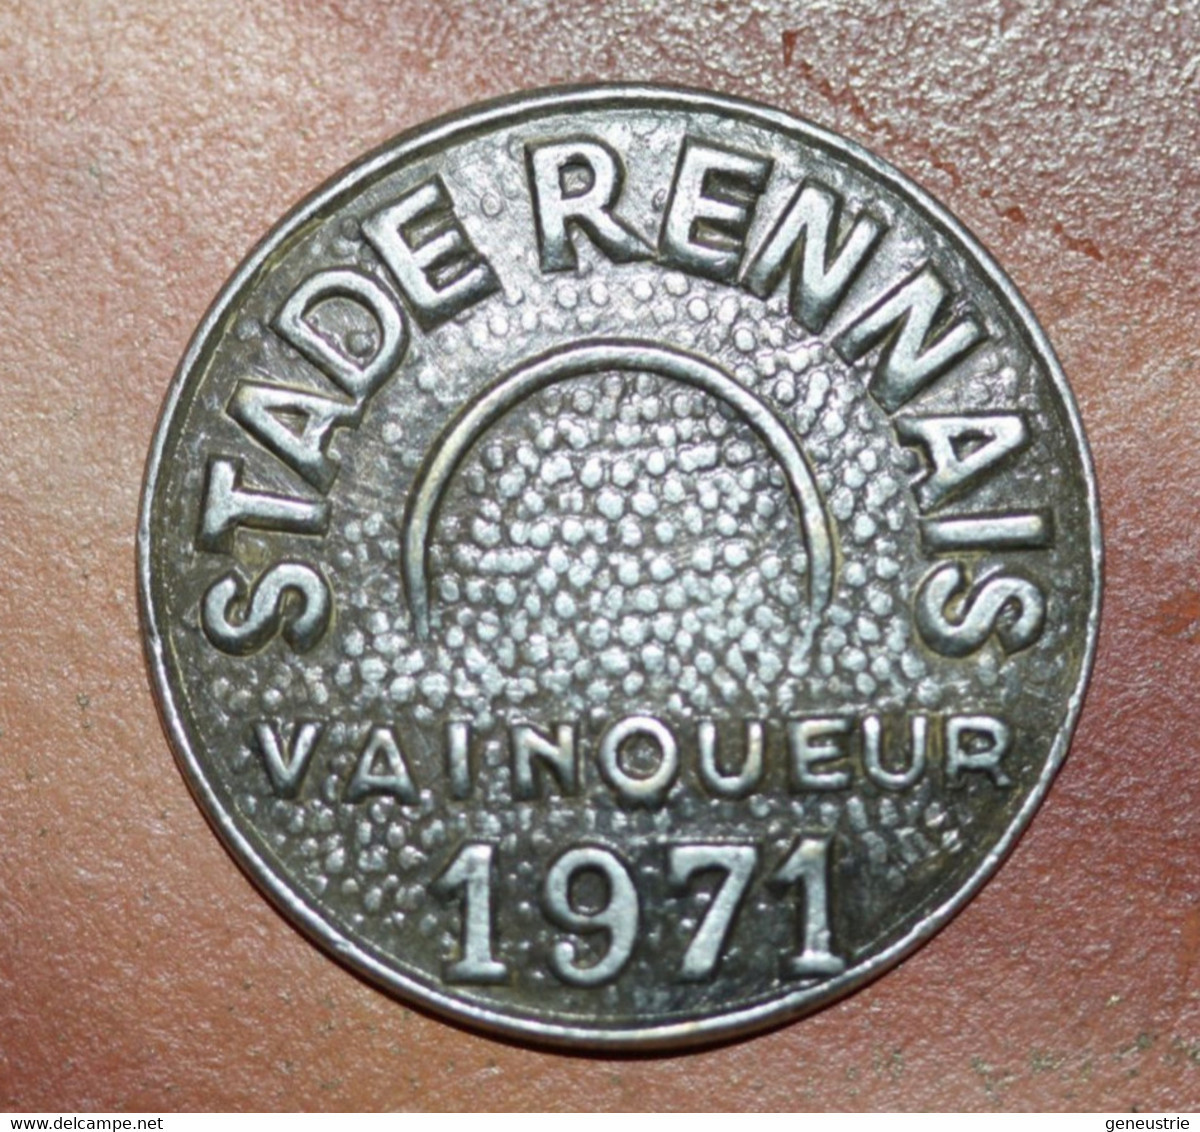 Rare Jeton Sportif Bractéate "Stade Rennais / Vainqueur 1971" Football Rennes Ille-et-Vilaine - Bretagne - Monétaires / De Nécessité